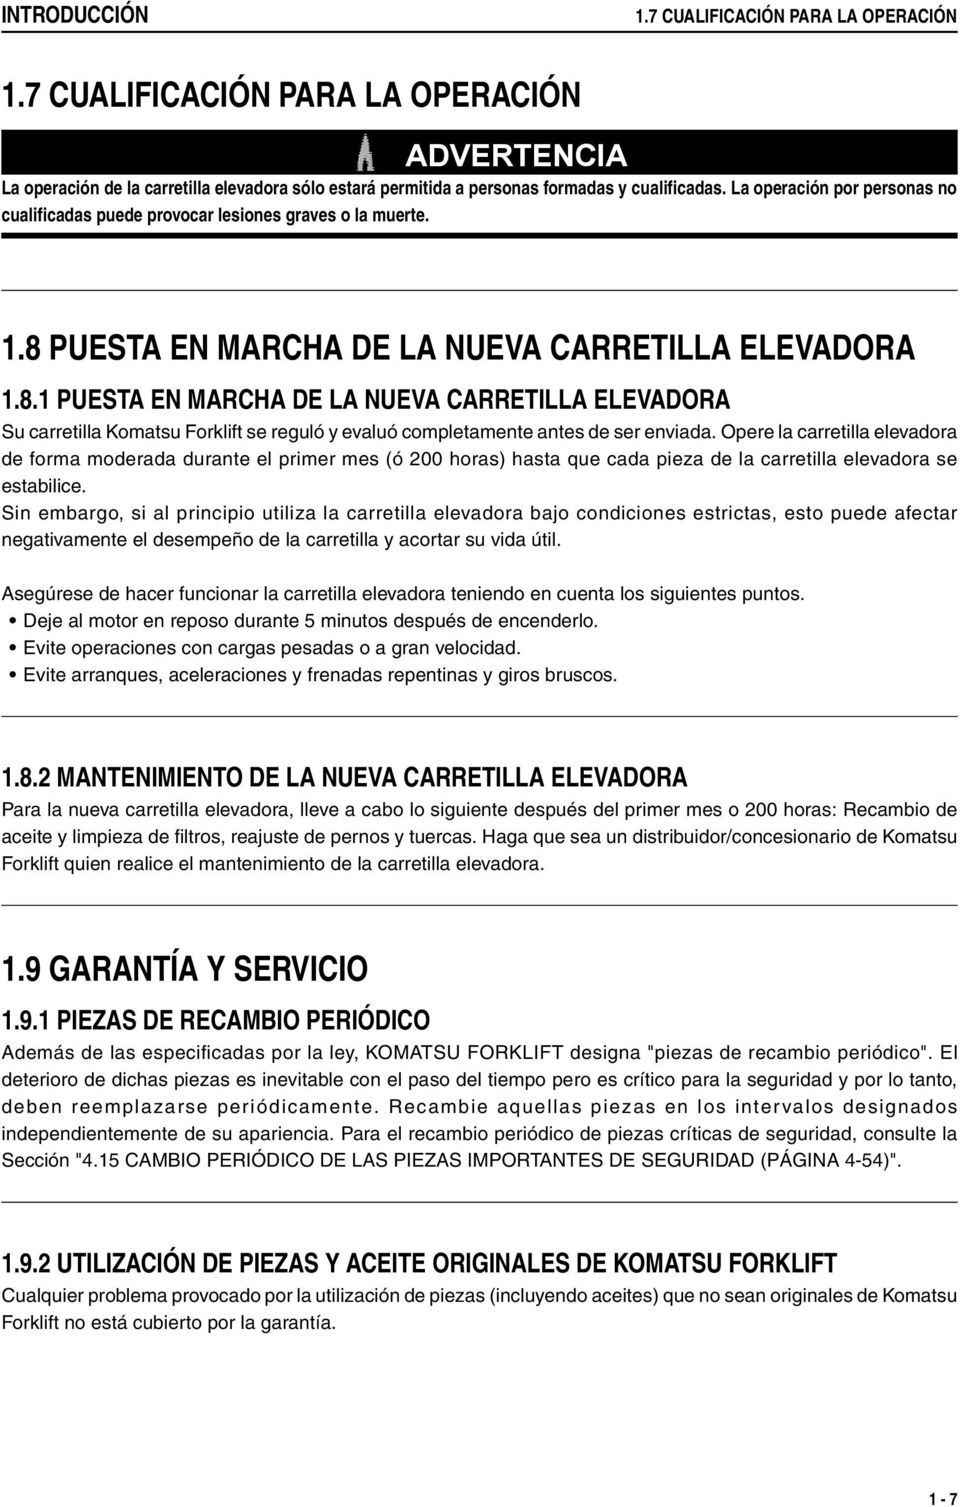 PUESTA EN MARCHA DE LA NUEVA CARRETILLA ELEVADORA 1.8.1 PUESTA EN MARCHA DE LA NUEVA CARRETILLA ELEVADORA Su carretilla Komatsu Forklift se reguló y evaluó completamente antes de ser enviada.